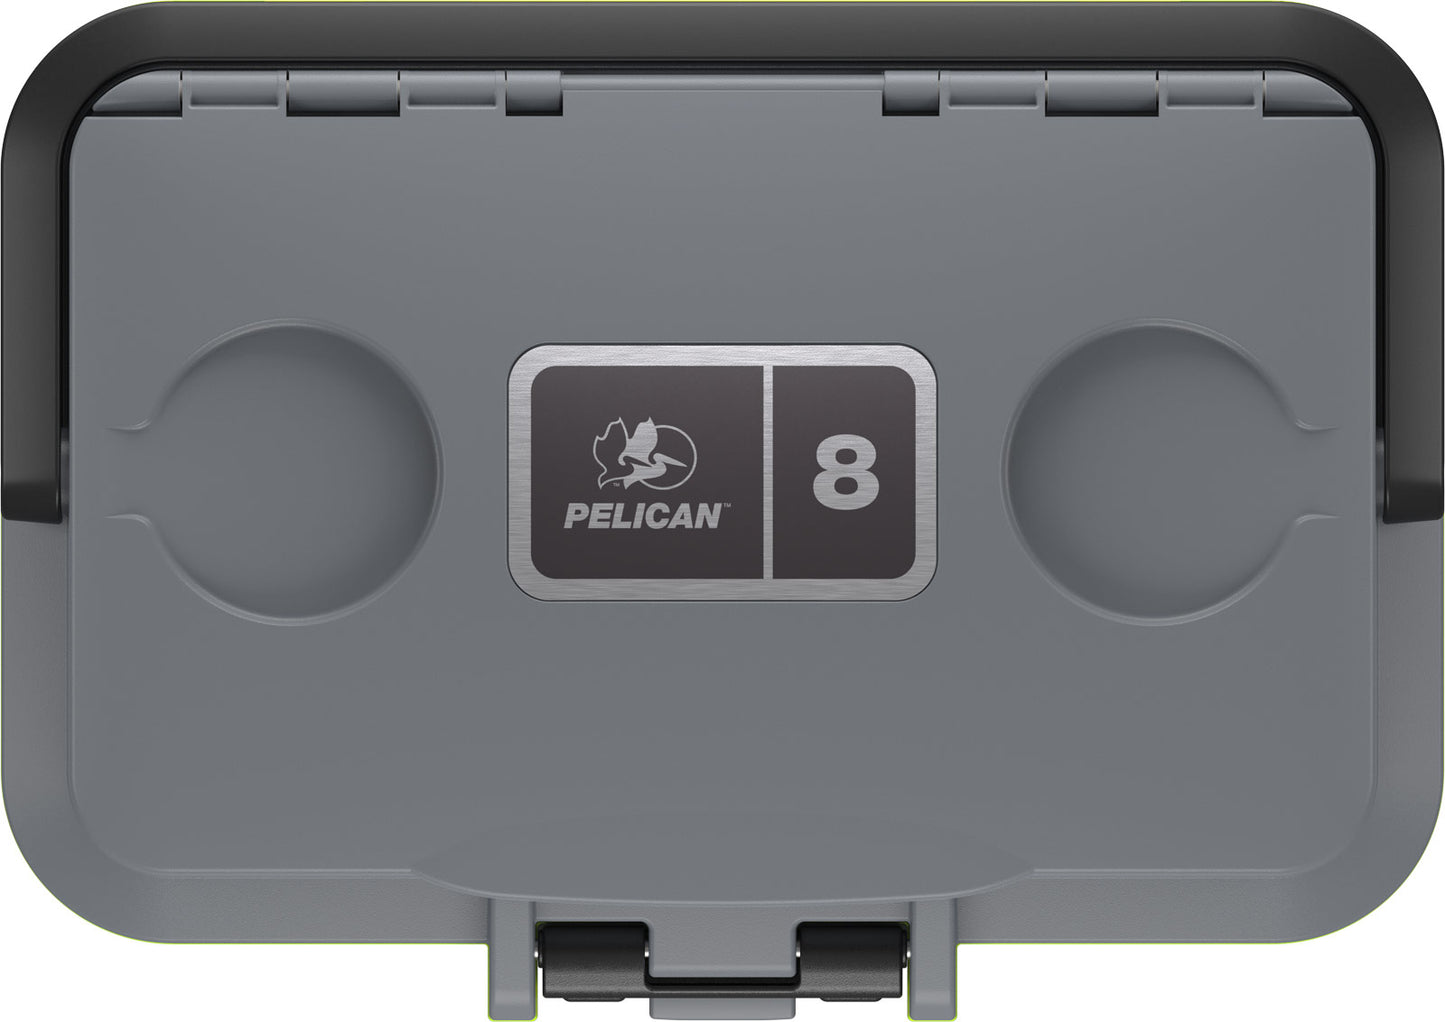 Pelican 8qt Personal Cooler